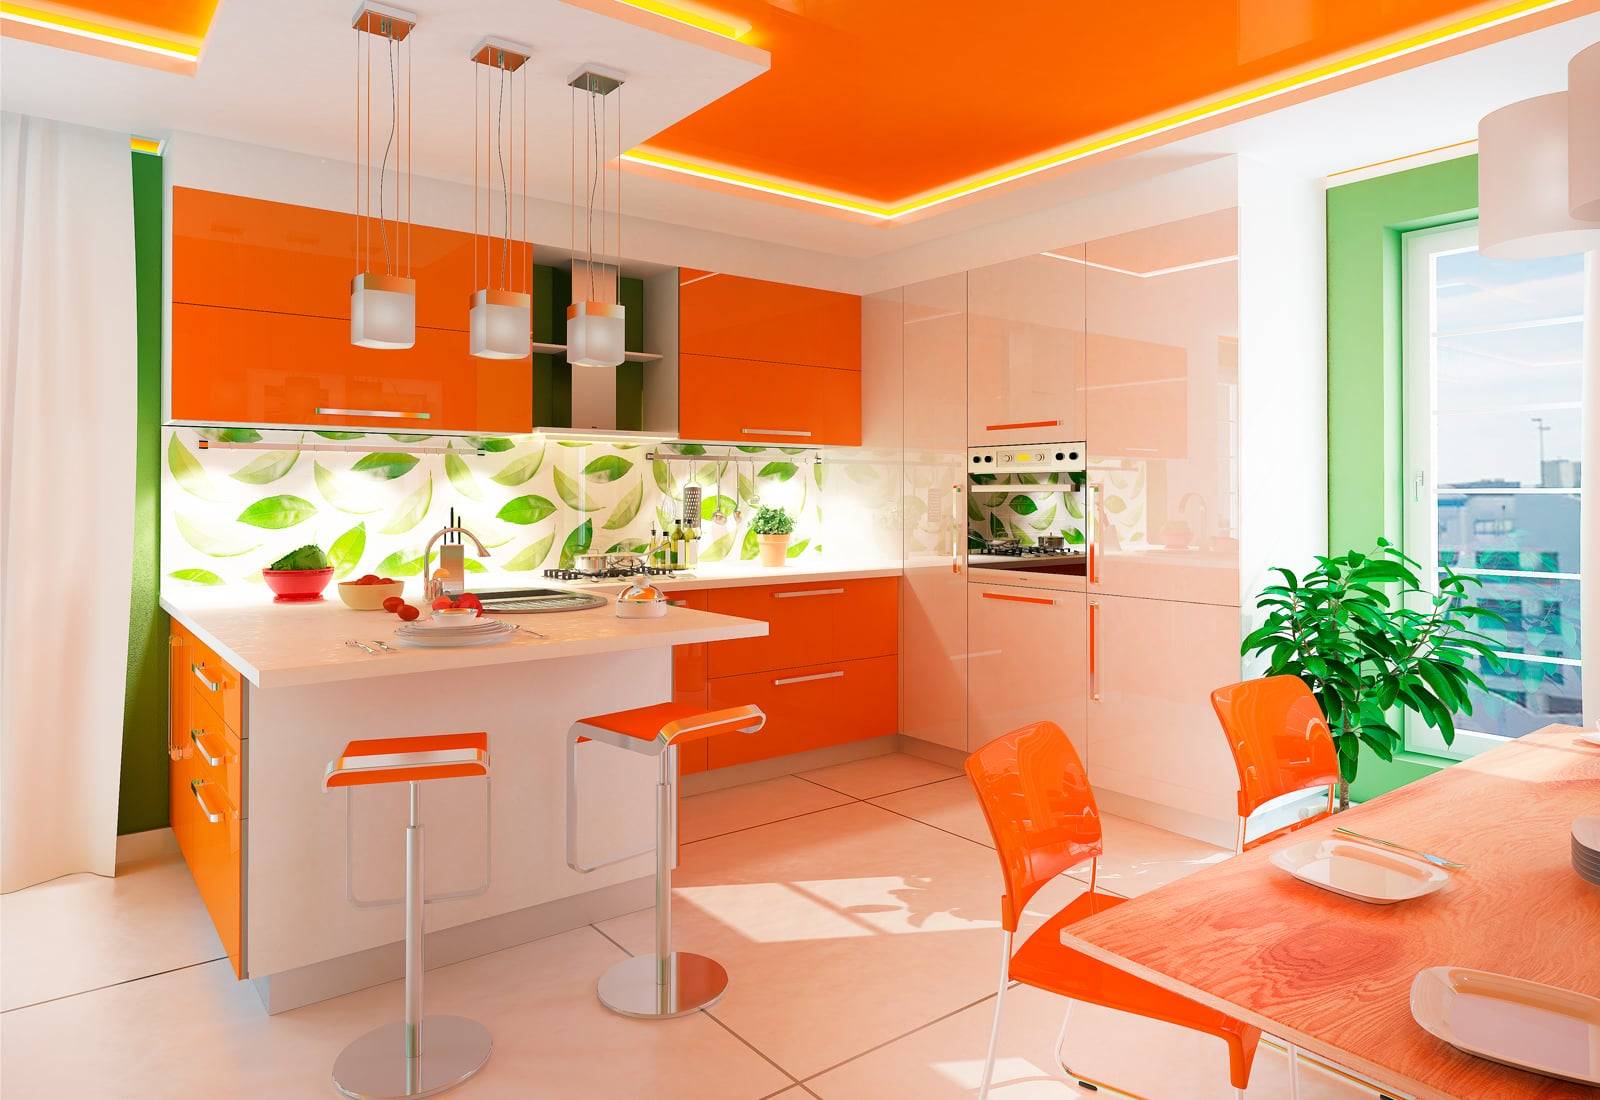 Оранжевая кухня в интерьере: 70 классных идей с примерами